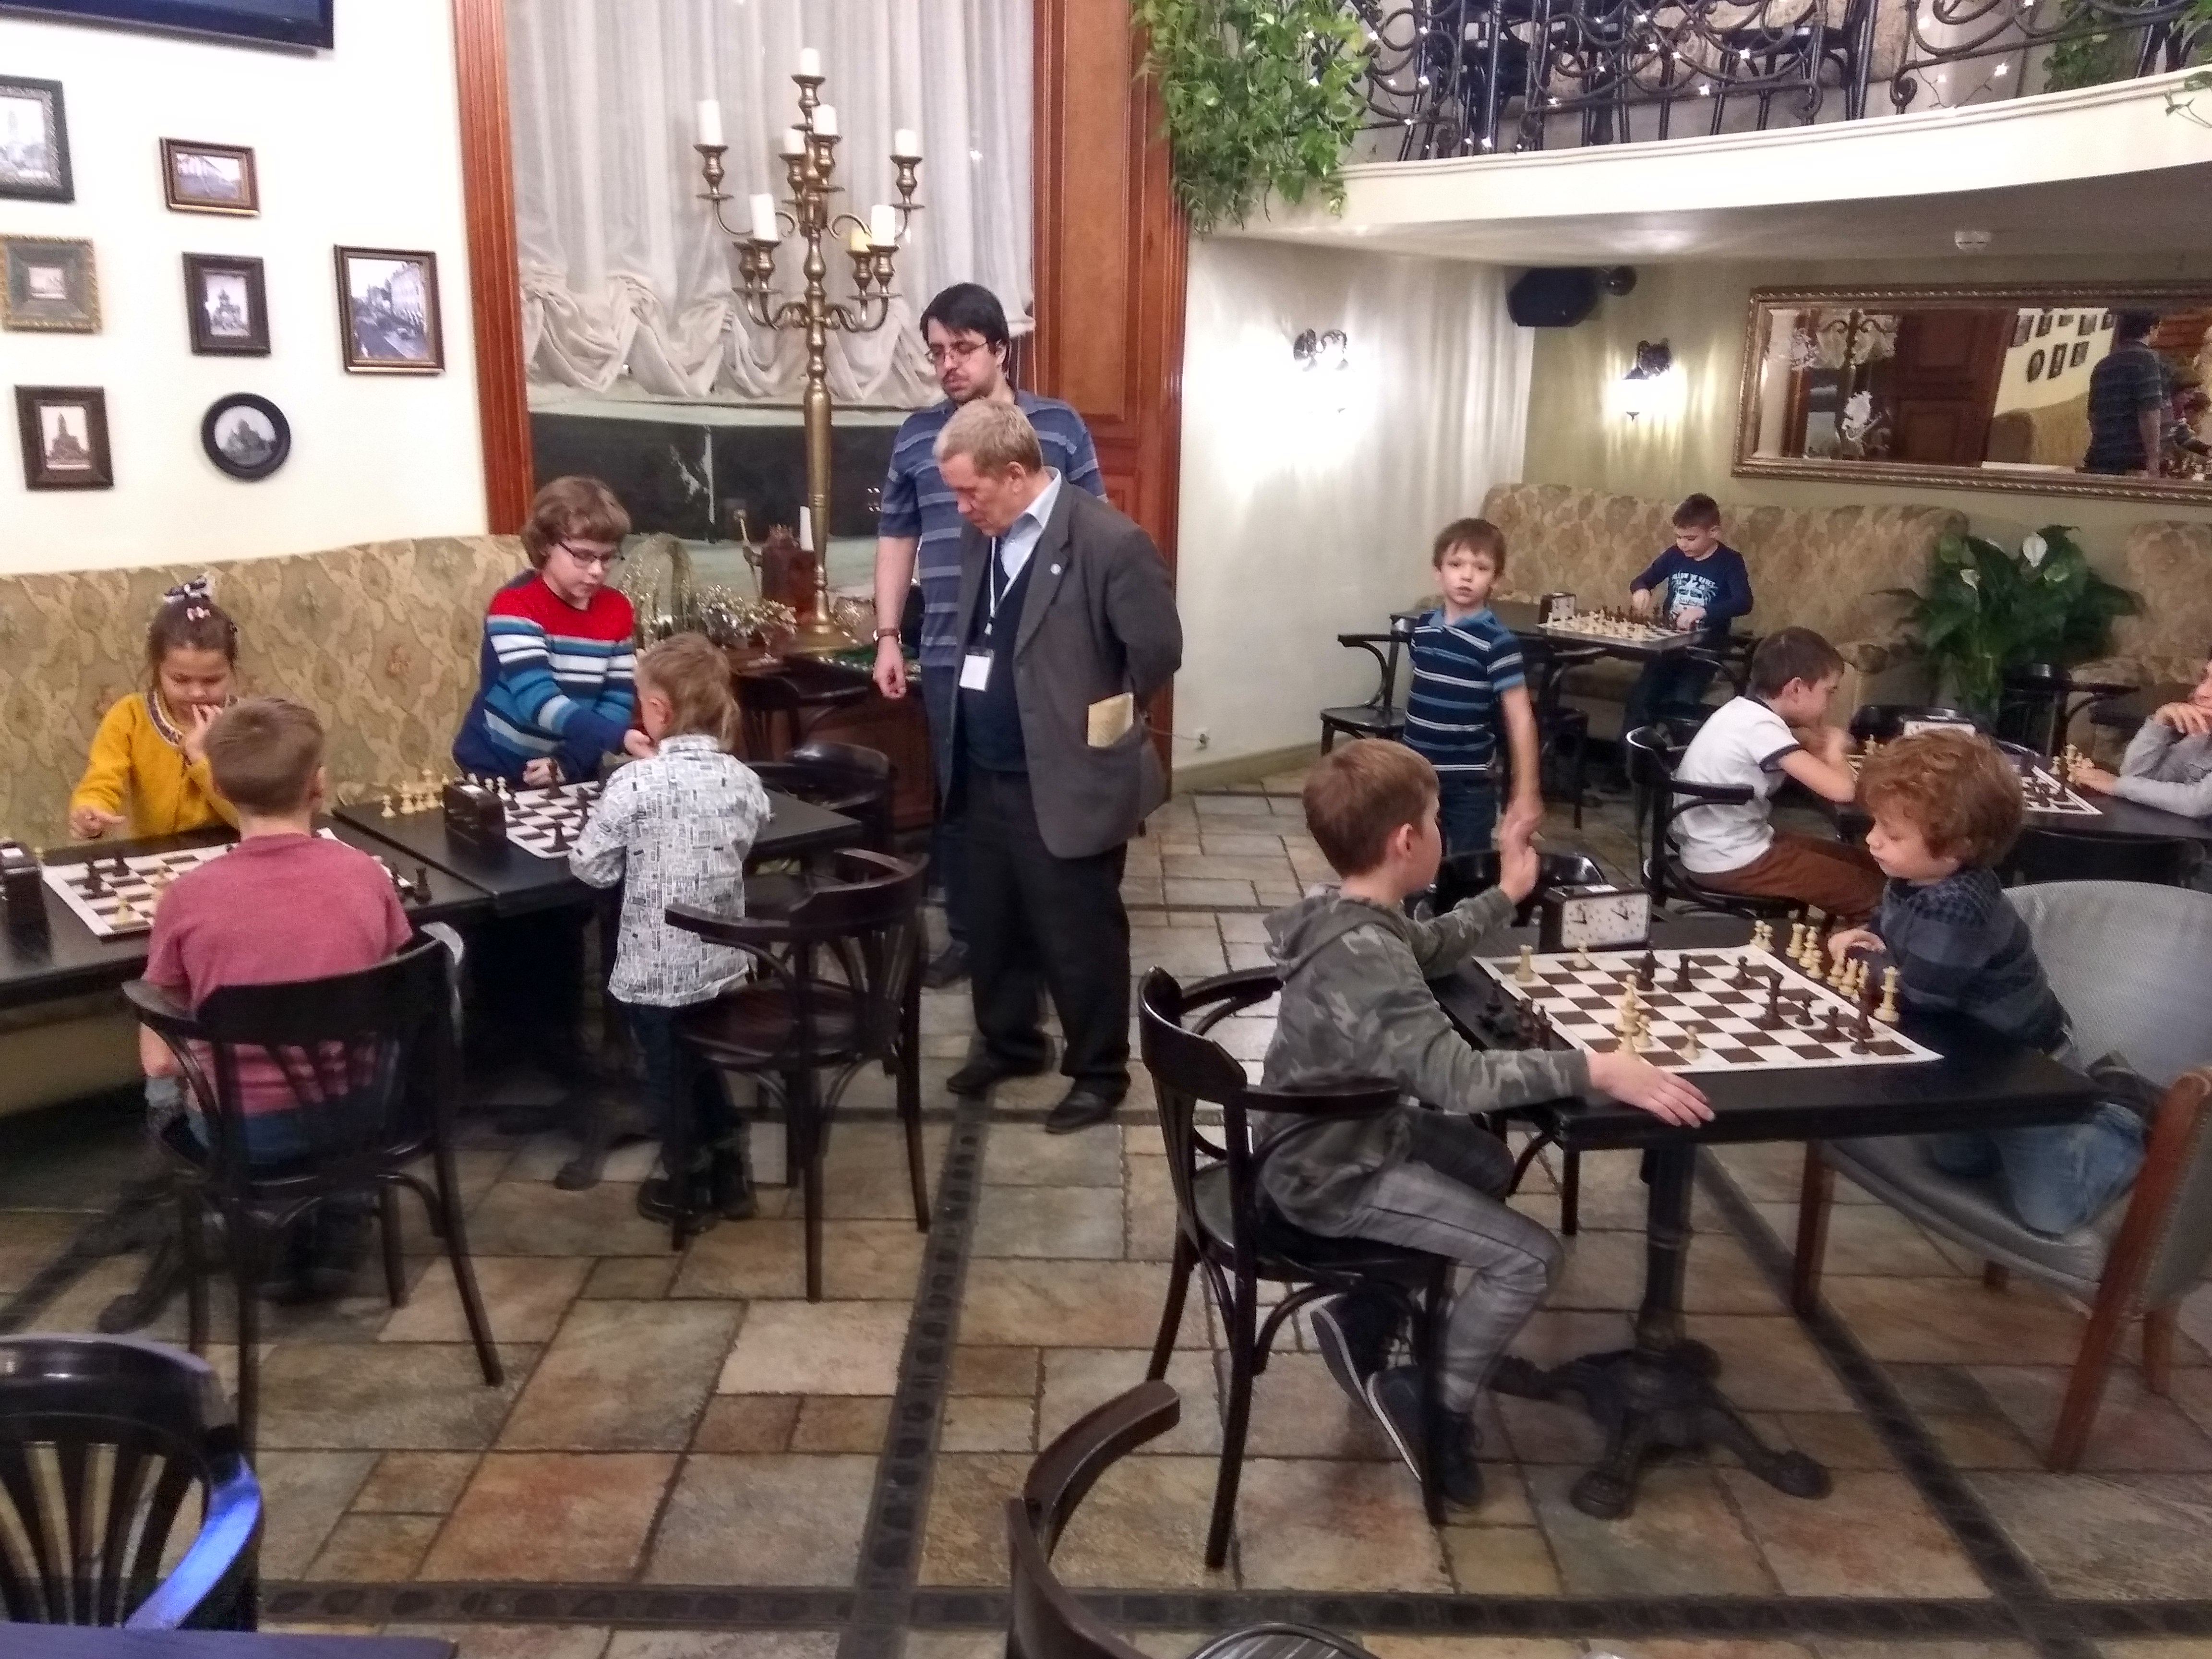 Детский шахматный турнир